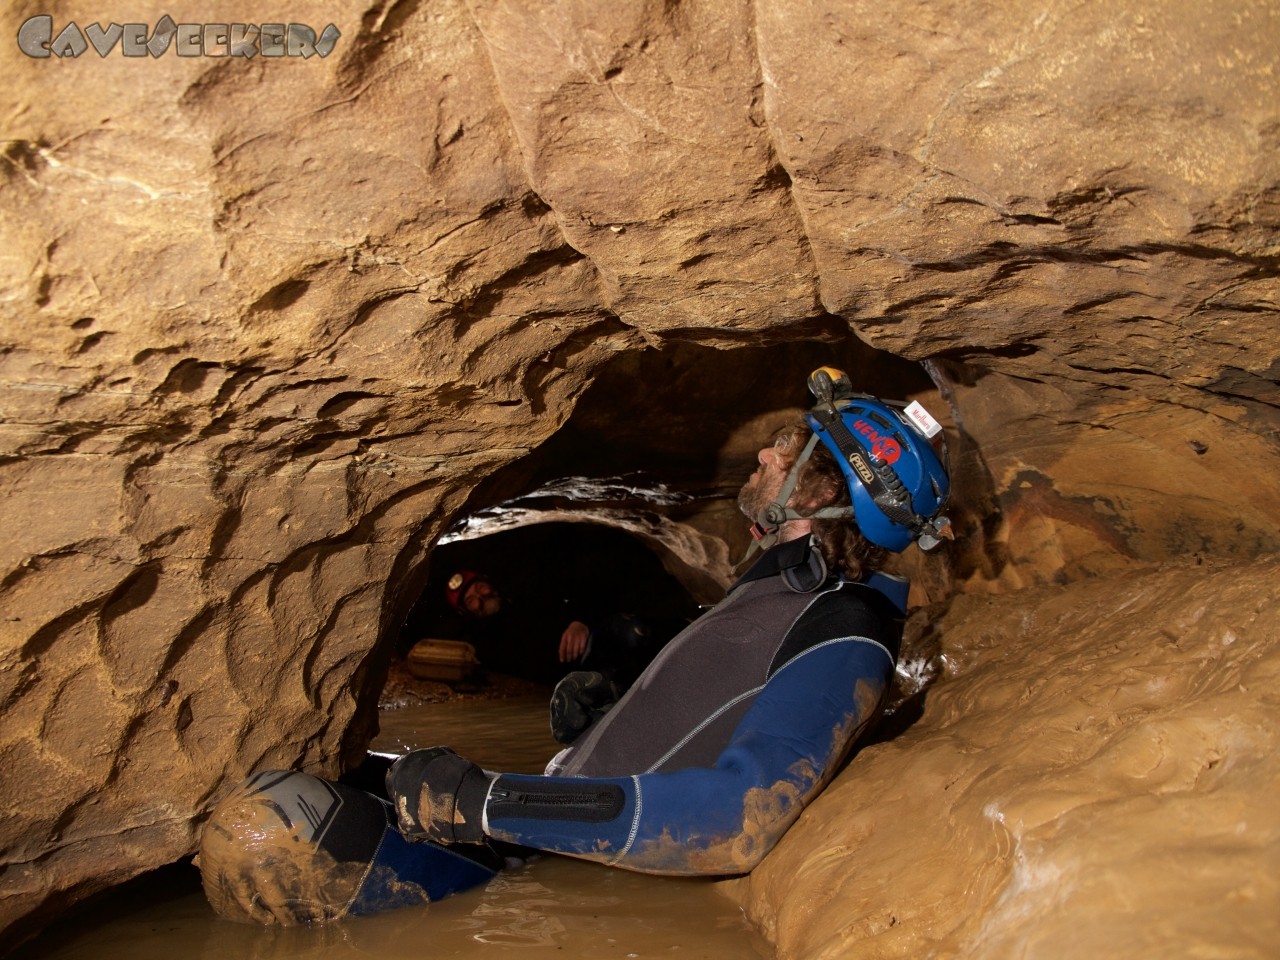 Flüchtlingshöhle: Die Pracht der Höhle lädt zum Verweilen ein. Die unteren Körperregionen werden ausreichend gekühlt.